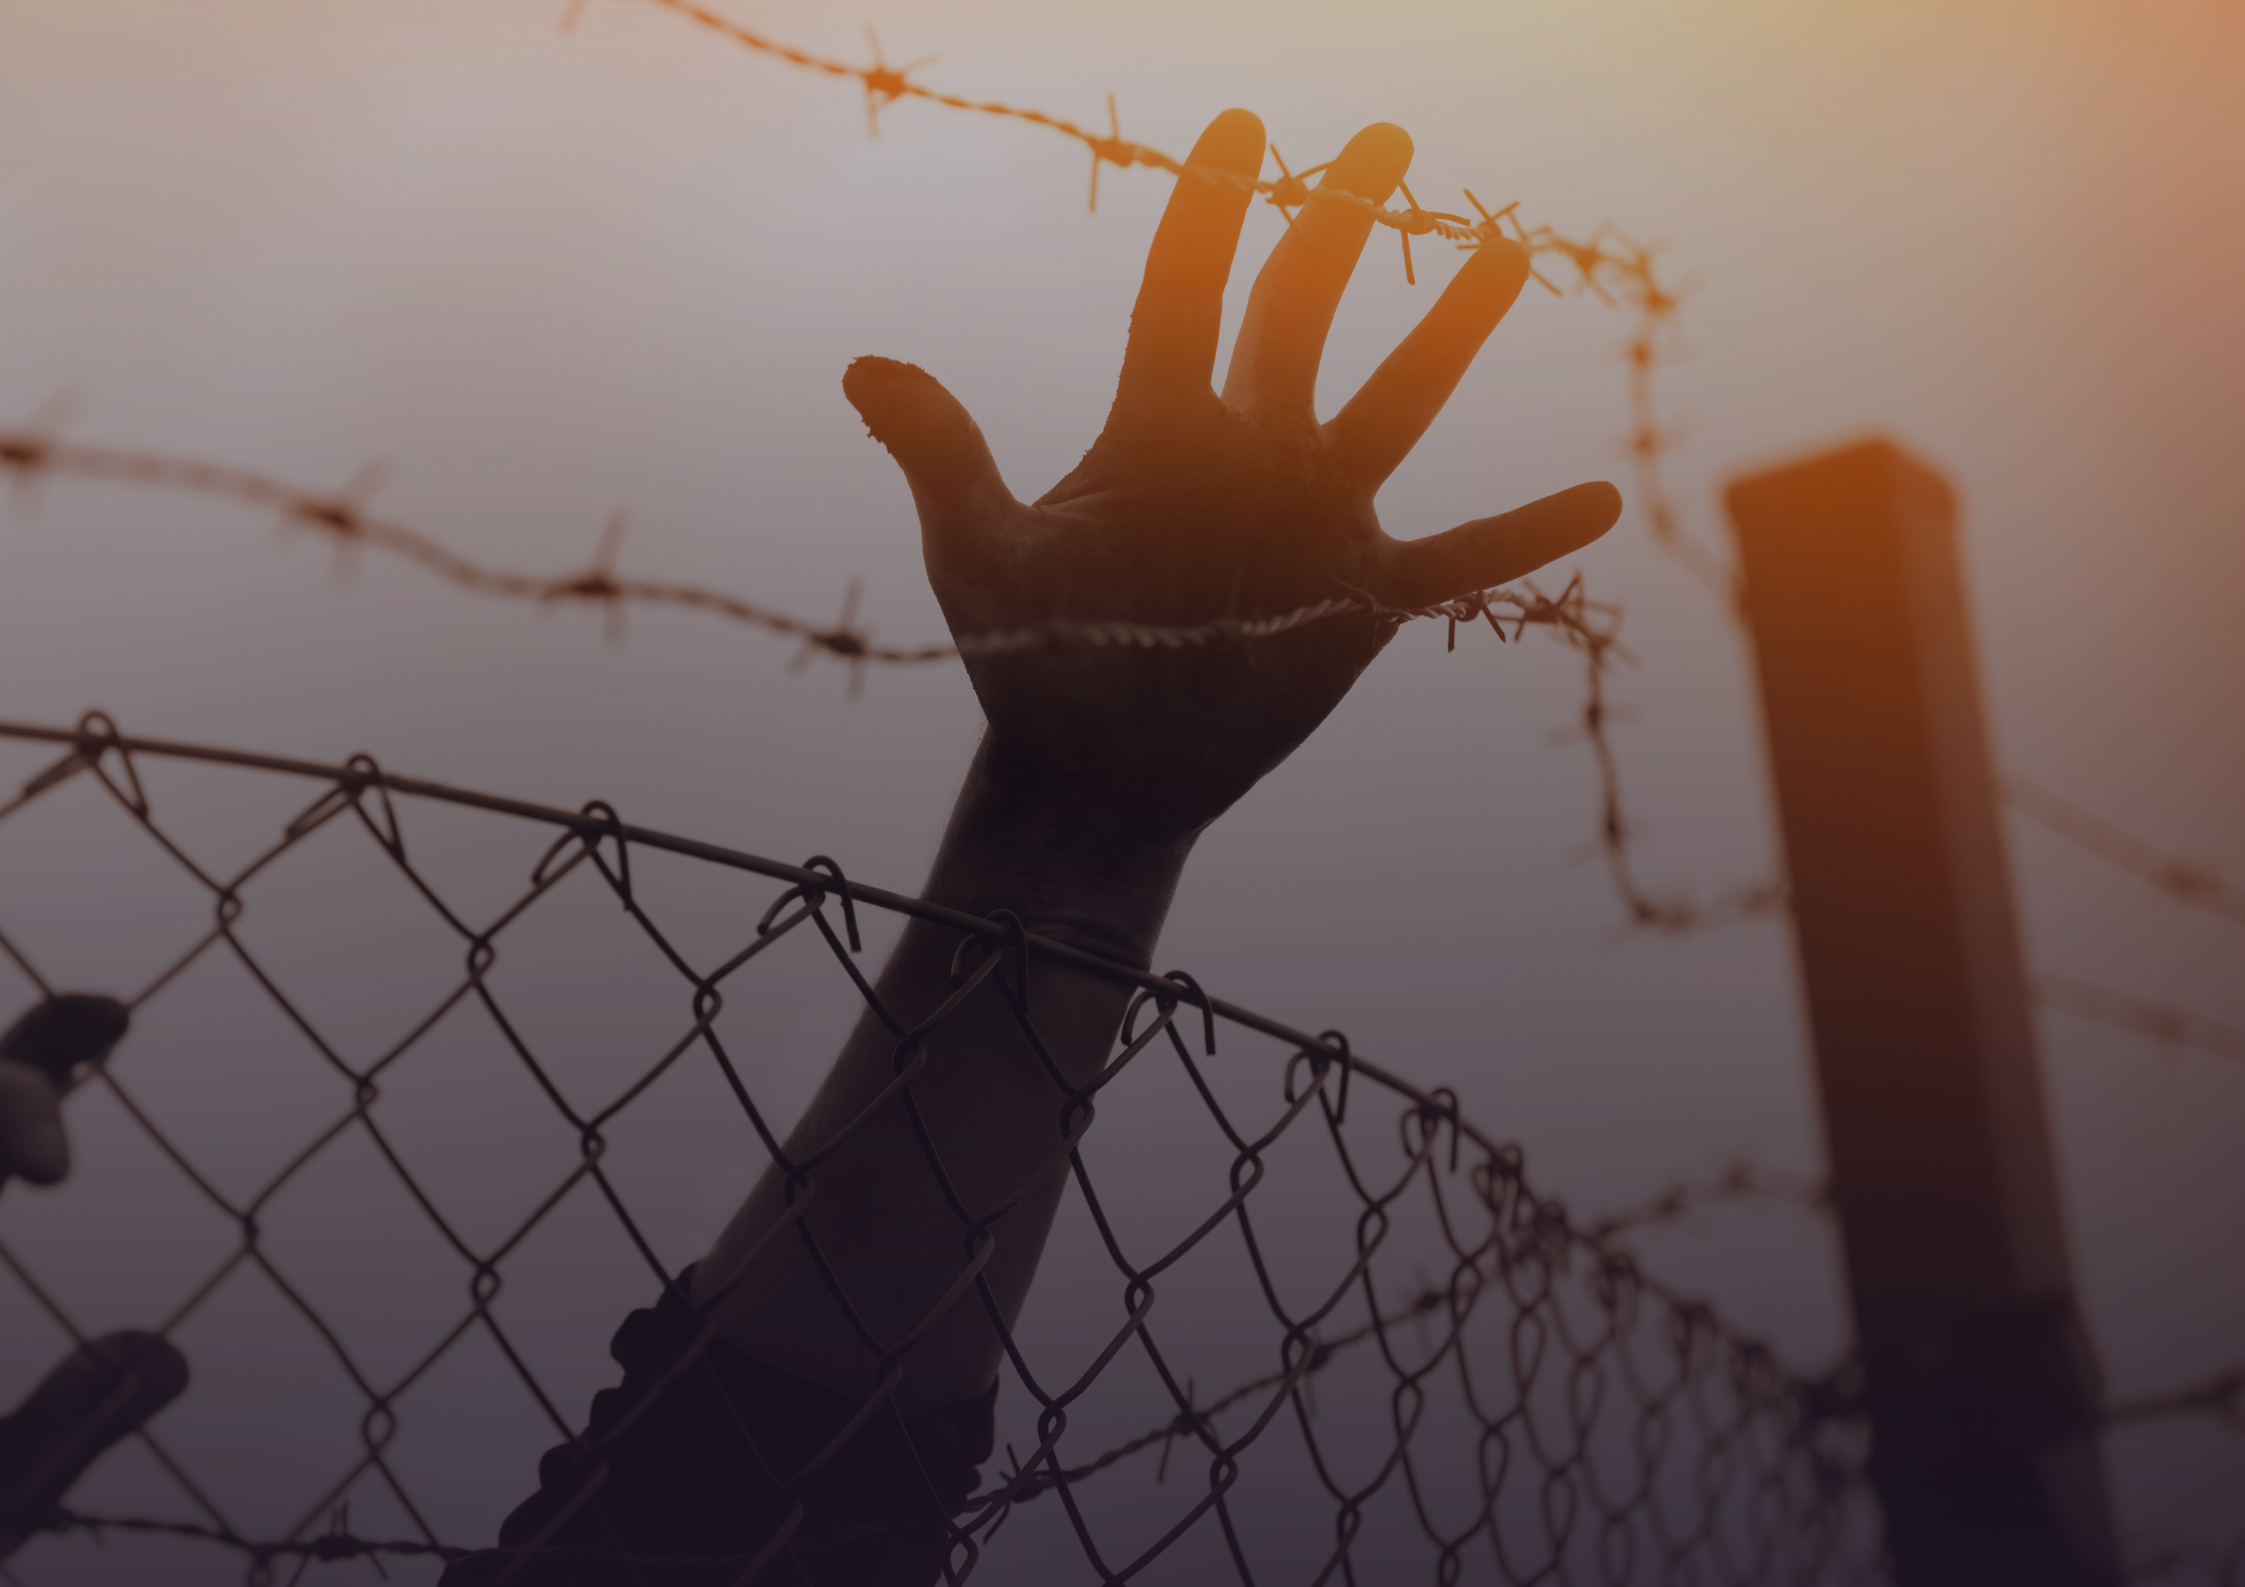 24 محتجزة إريتريين من سجن 15 مايو بحلوان لمكان غير معلوم، و إبلاغ ذويهم بعمل فحص كورونا لهم تمهيدا لترحيلهم قسرا Poster Landscape 1